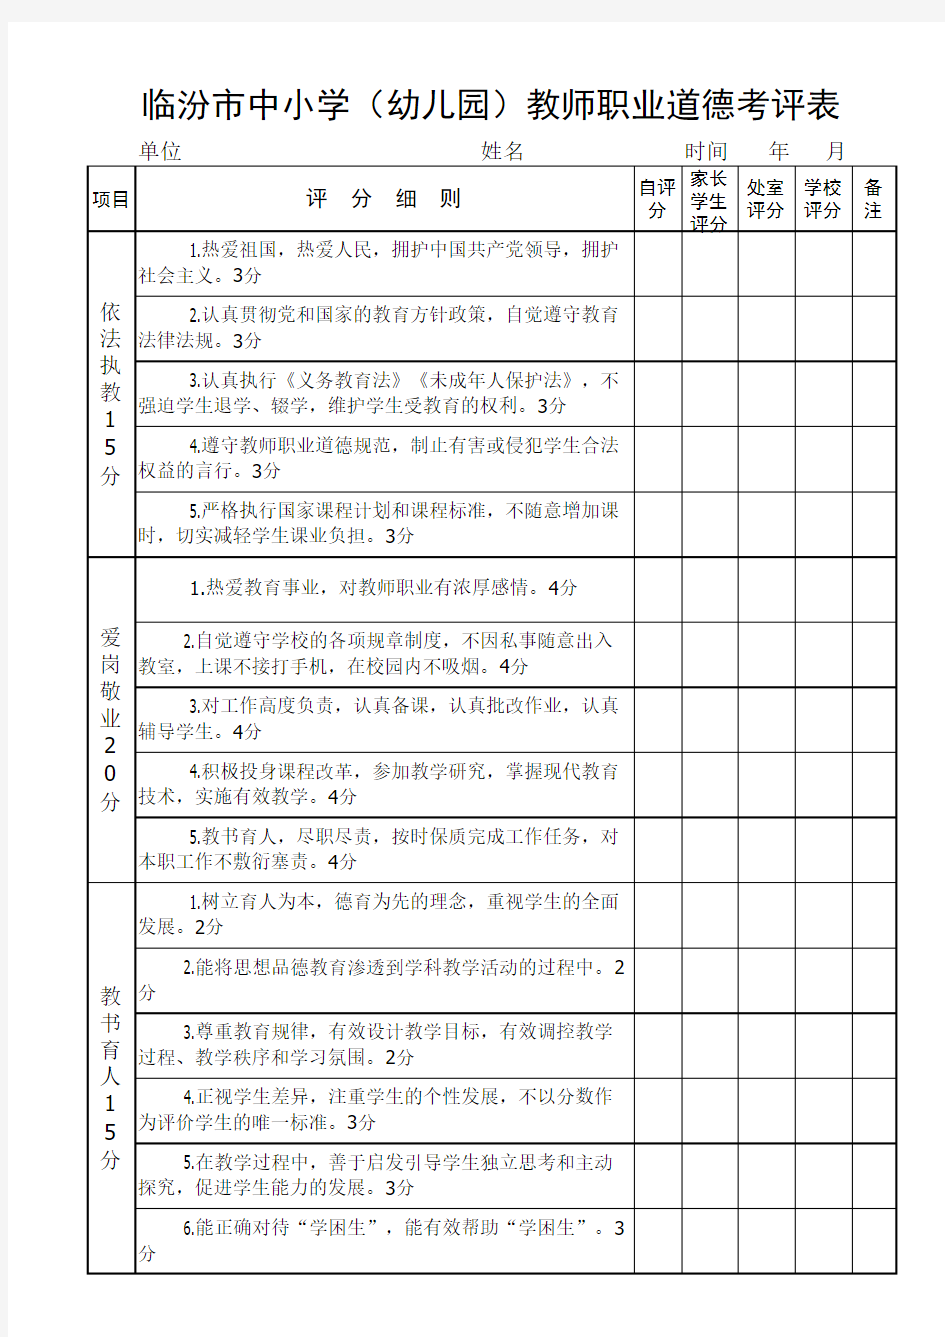 临汾市中小学(幼儿园)教师职业道德考评表